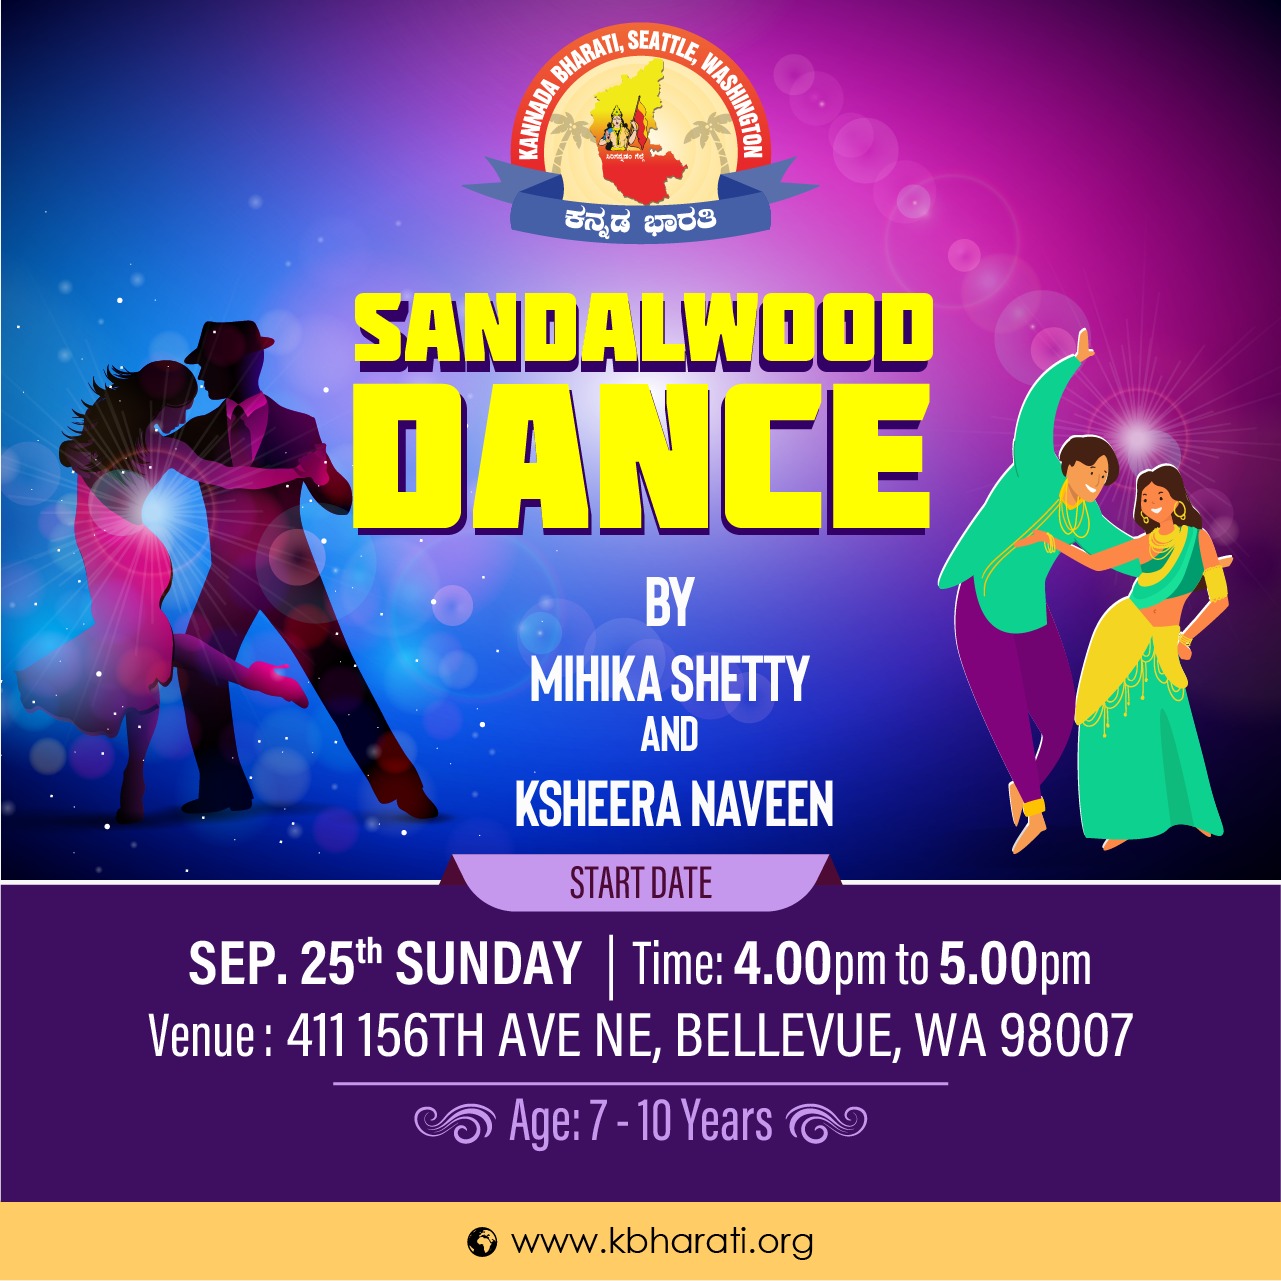 Sandalwood Dance by Mihika Shetty and Ksheera Naveen